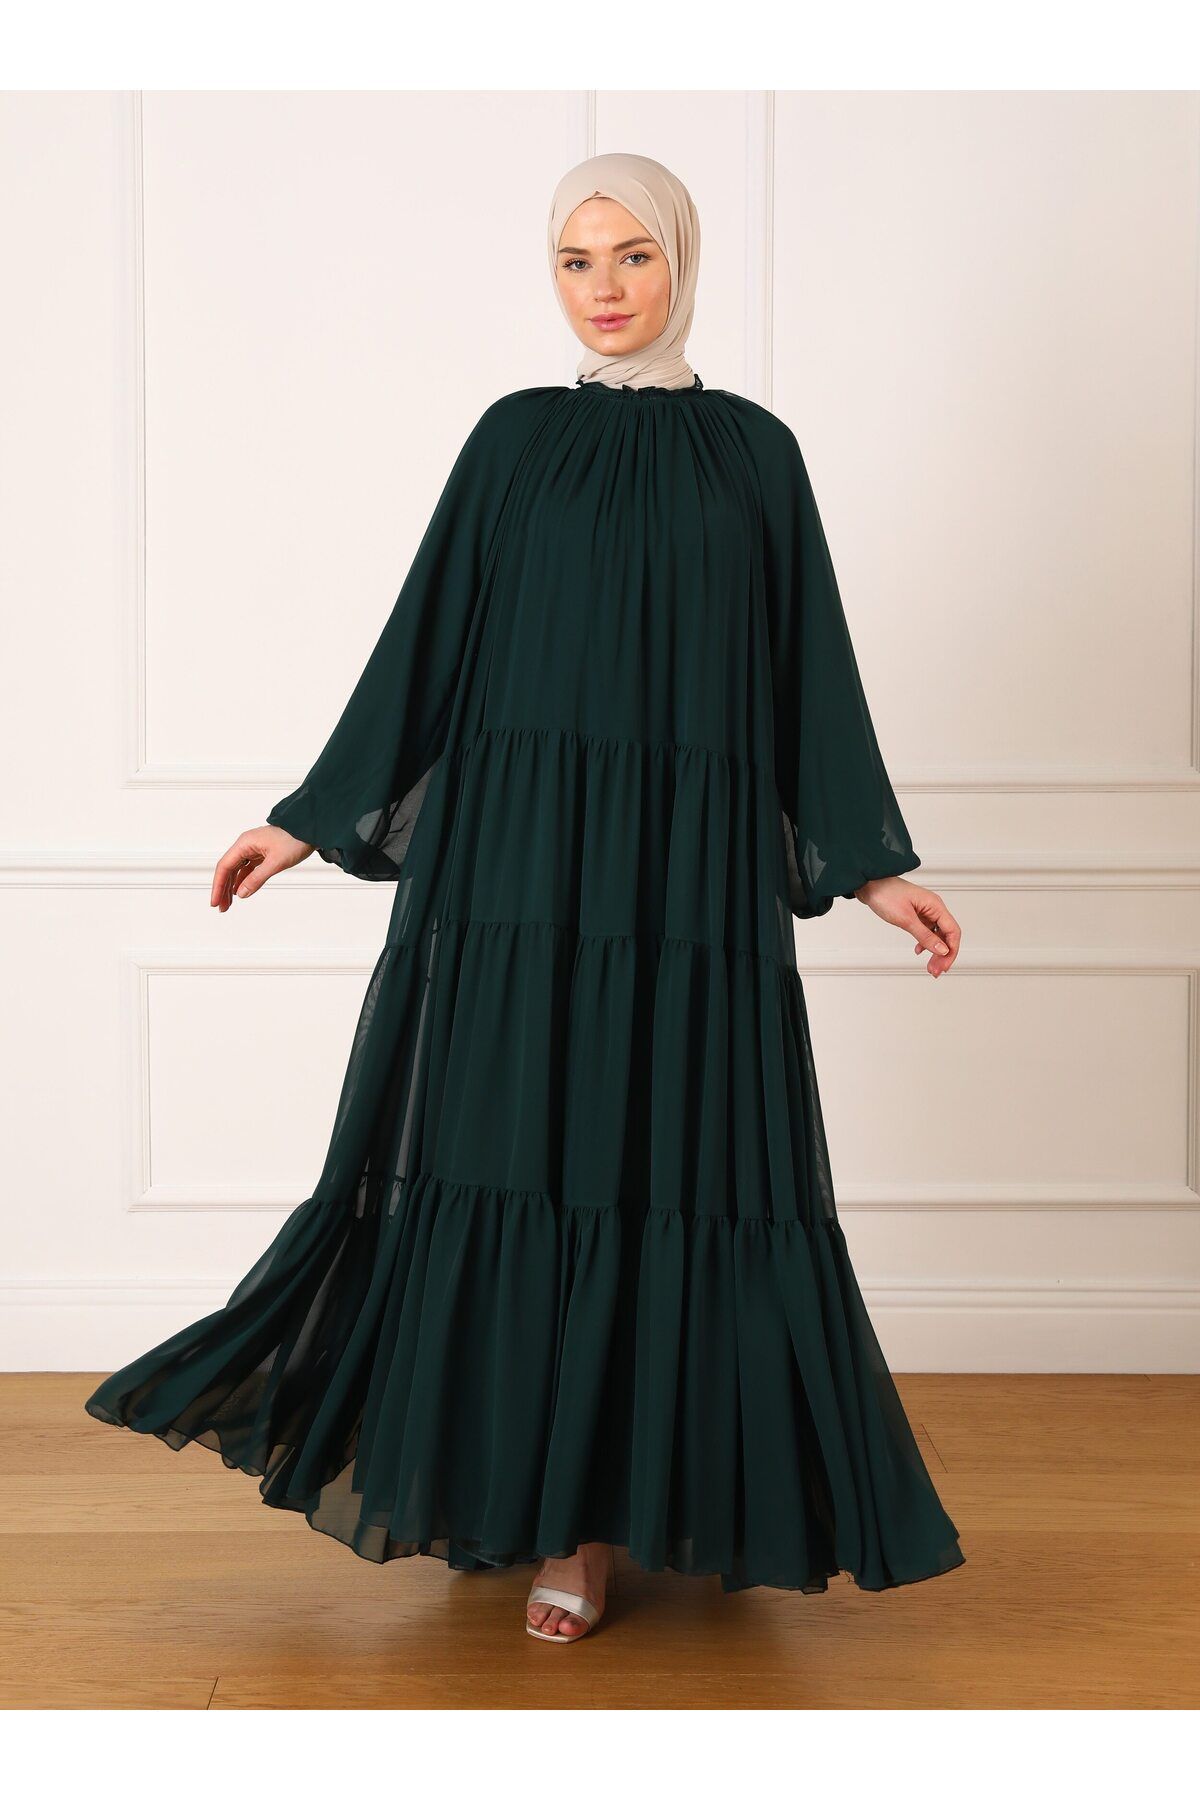 Refka Yakası Gipe Detaylı Geniş Kesim Şifon Tesettür Abiye Elbise - Zümrüt Yeşili - Refka